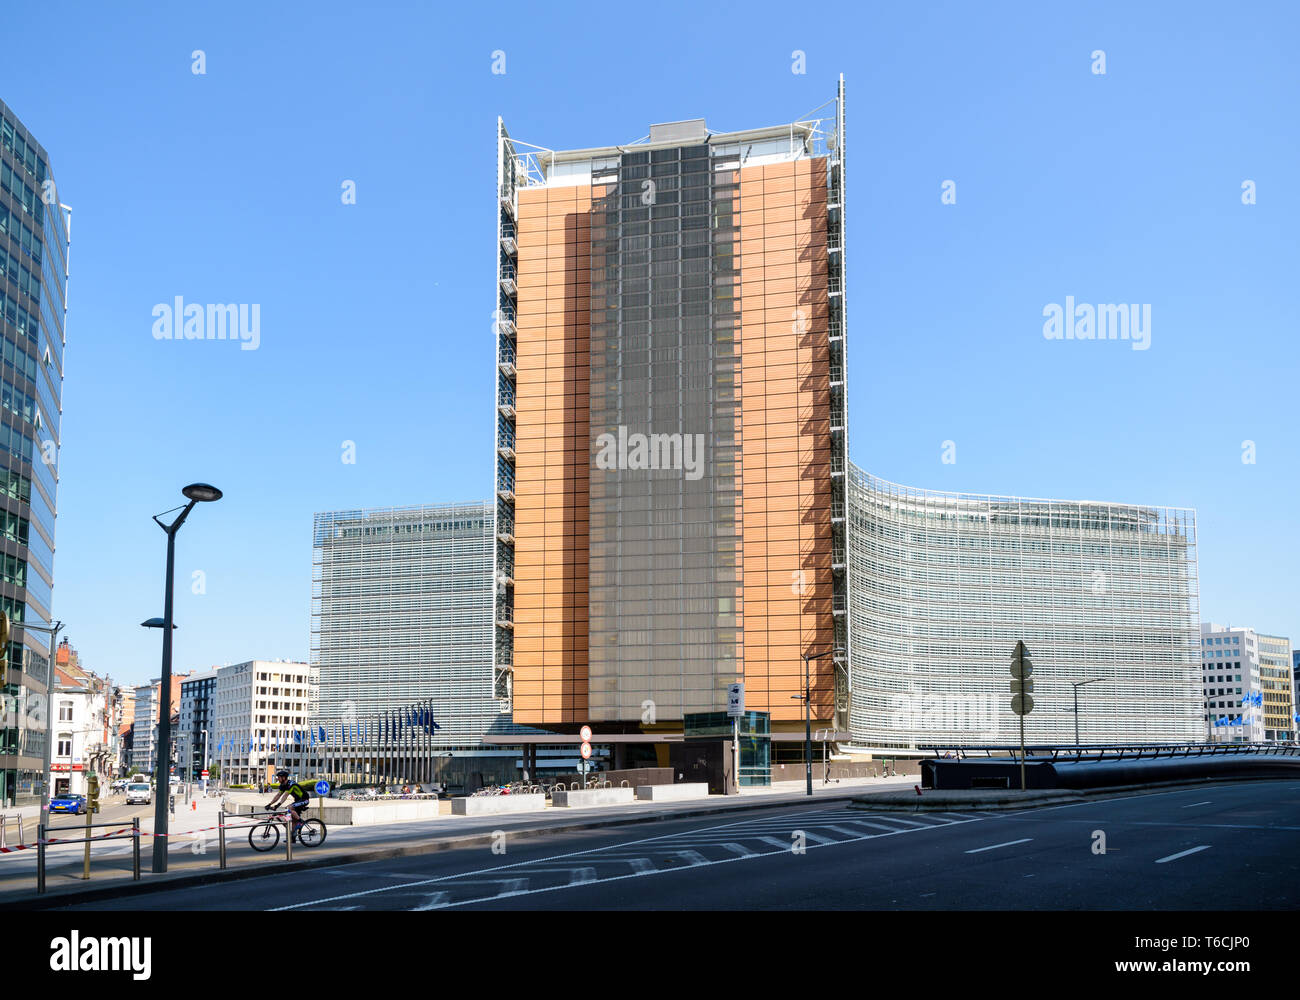 L'aile ouest du bâtiment du Berlaymont, siège de la Commission européenne dans le quartier européen à Bruxelles, Belgique. Banque D'Images